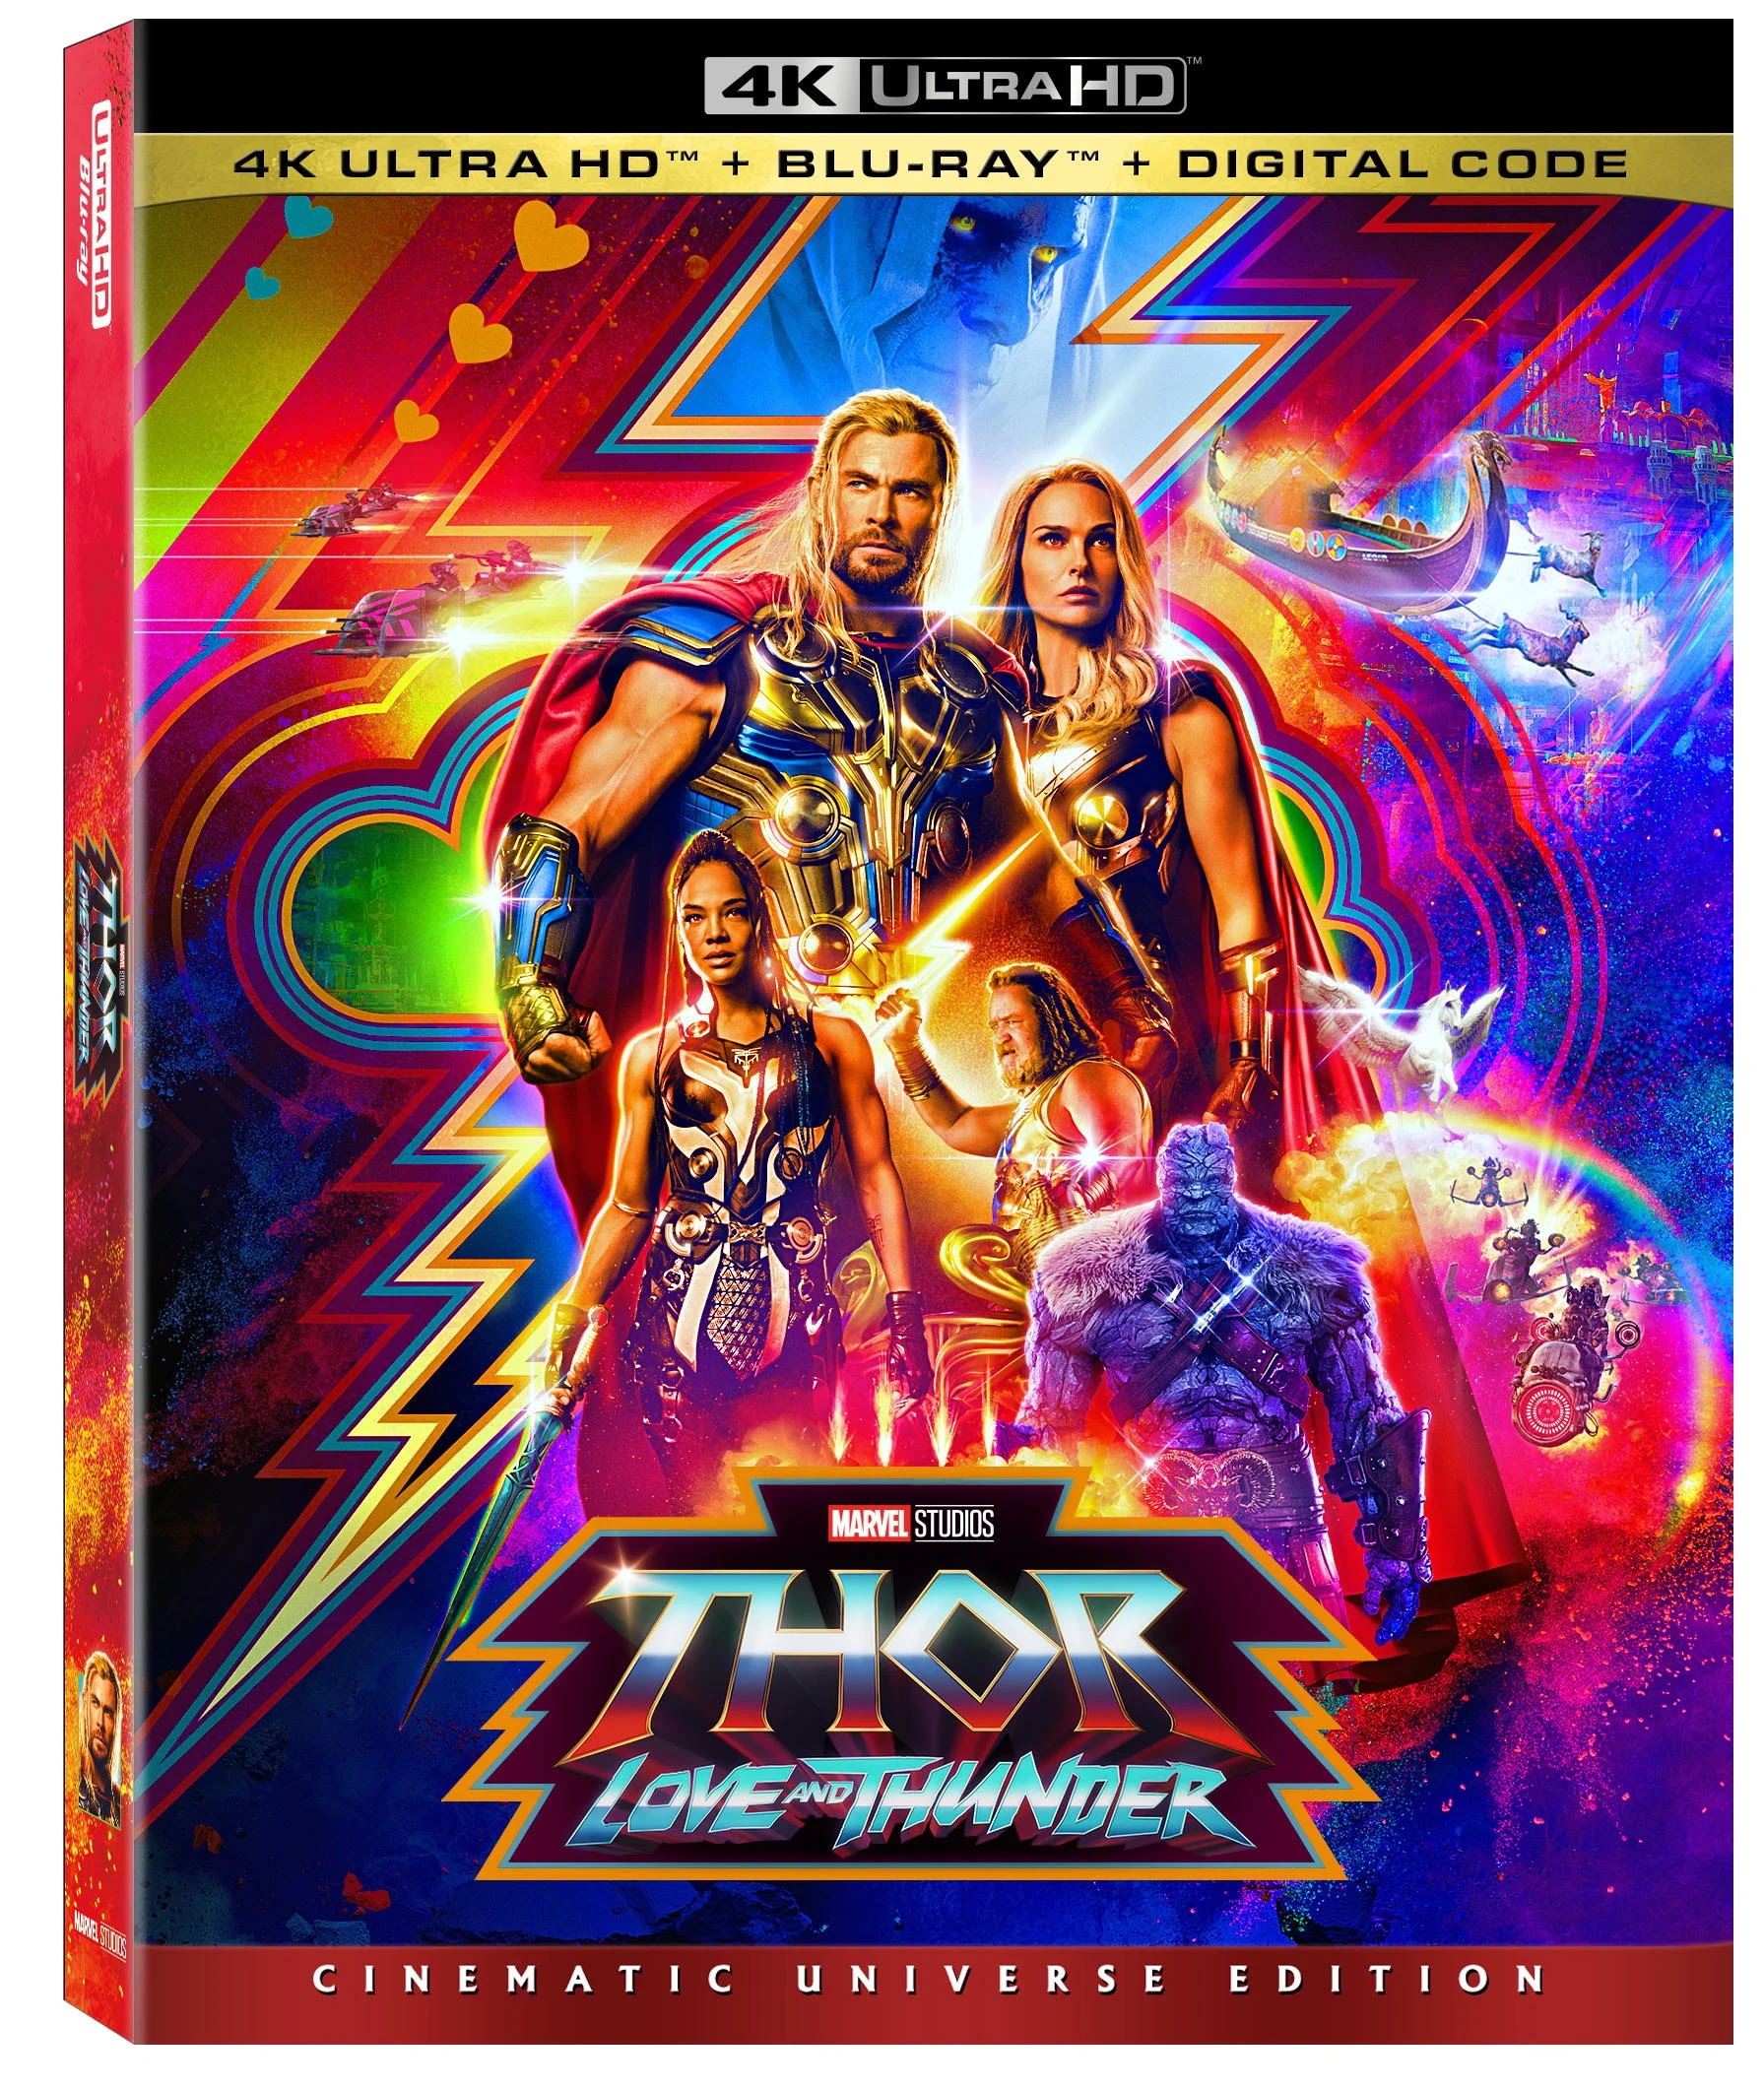 Thor: Amor e Trovão, Marvel Studios